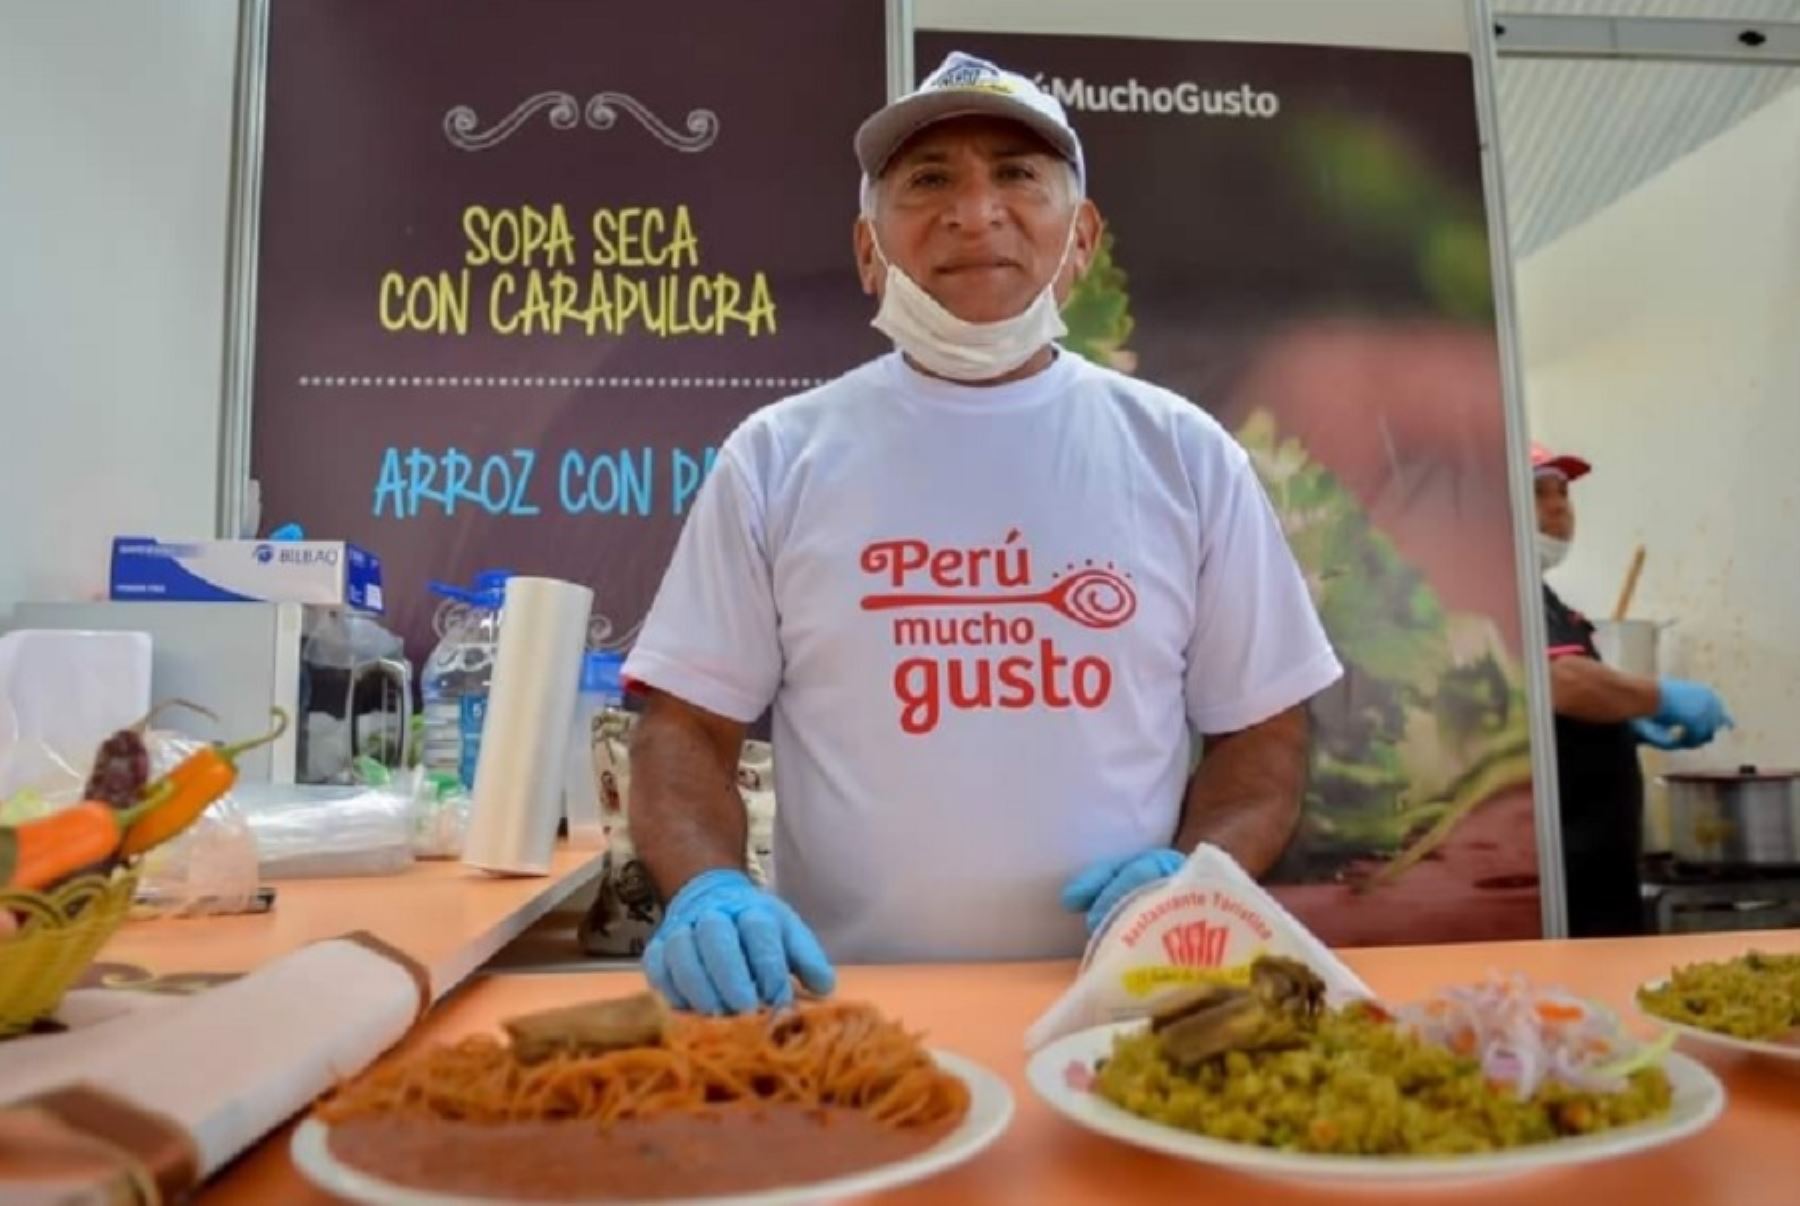 Después de cinco años, la ciudad de Tacna volverá a ser sede de la feria gastronómica “Perú Mucho Gusto”, anunció la subdirectora de promoción del turismo interno de Promperú, Laura Alegría García, durante la presentación del Plan de Promoción de Turismo 2023 de Promperú.